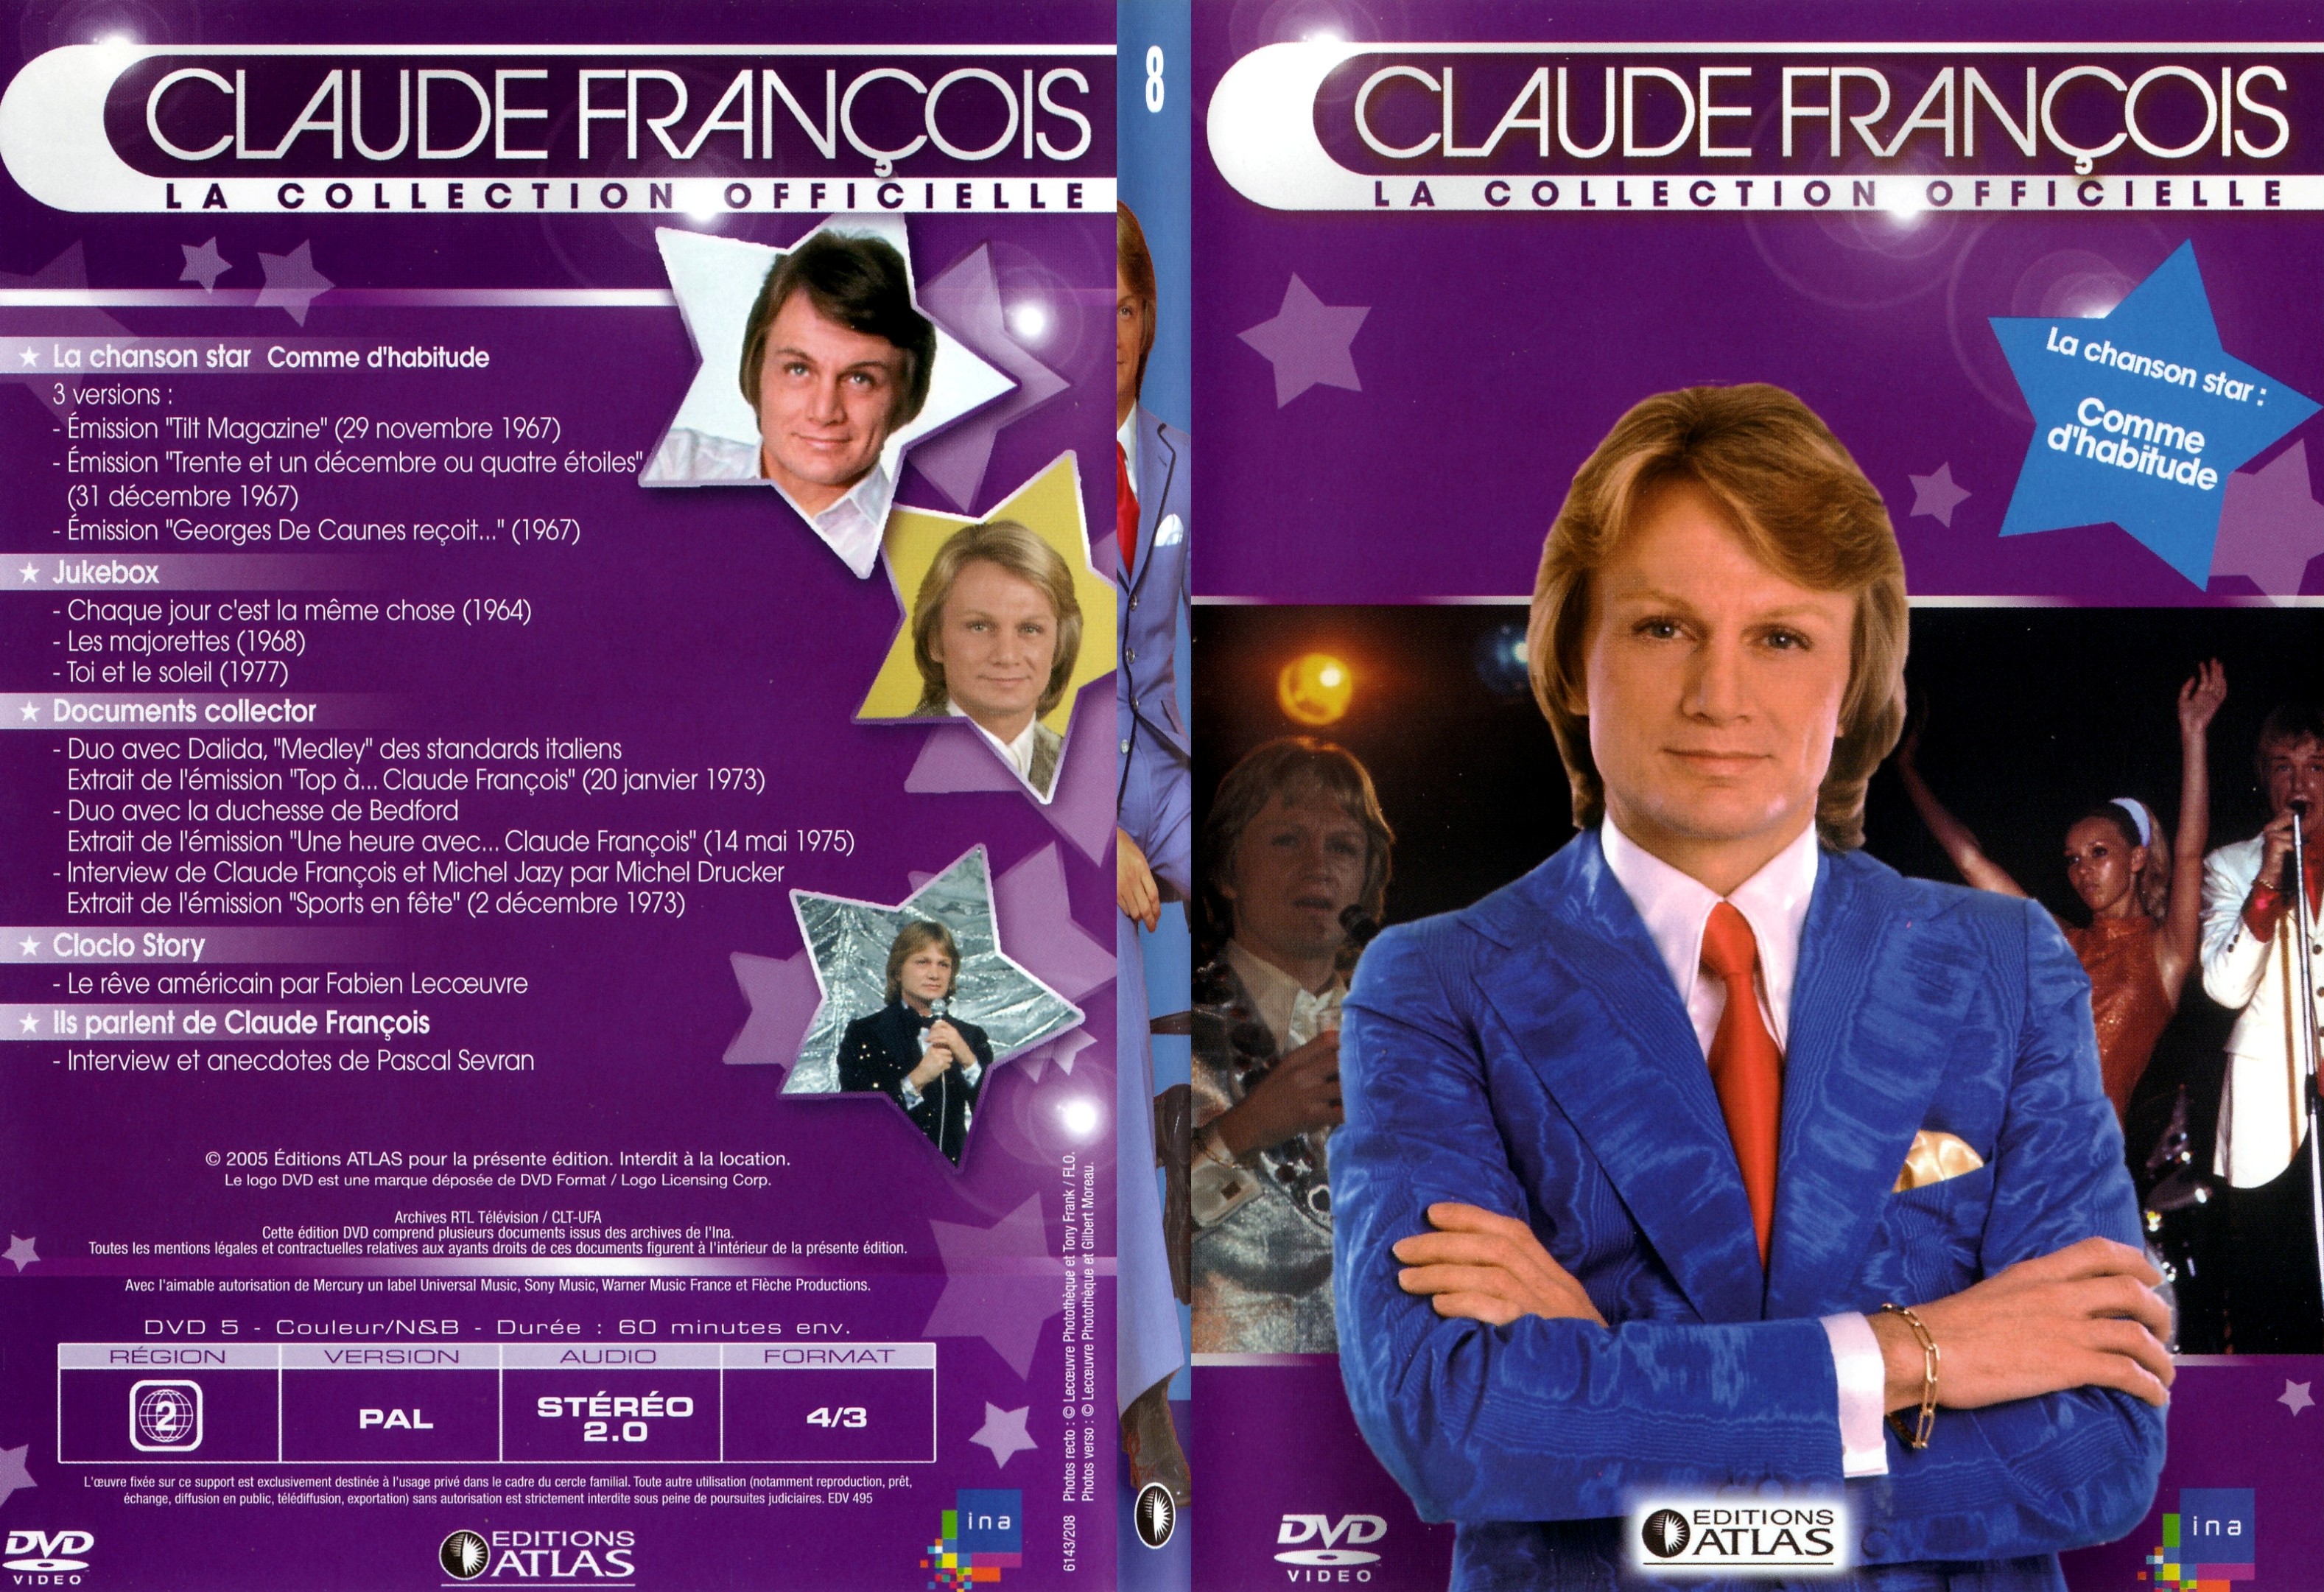 Jaquette DVD Claude francois le collection officielle vol 08 - SLIM